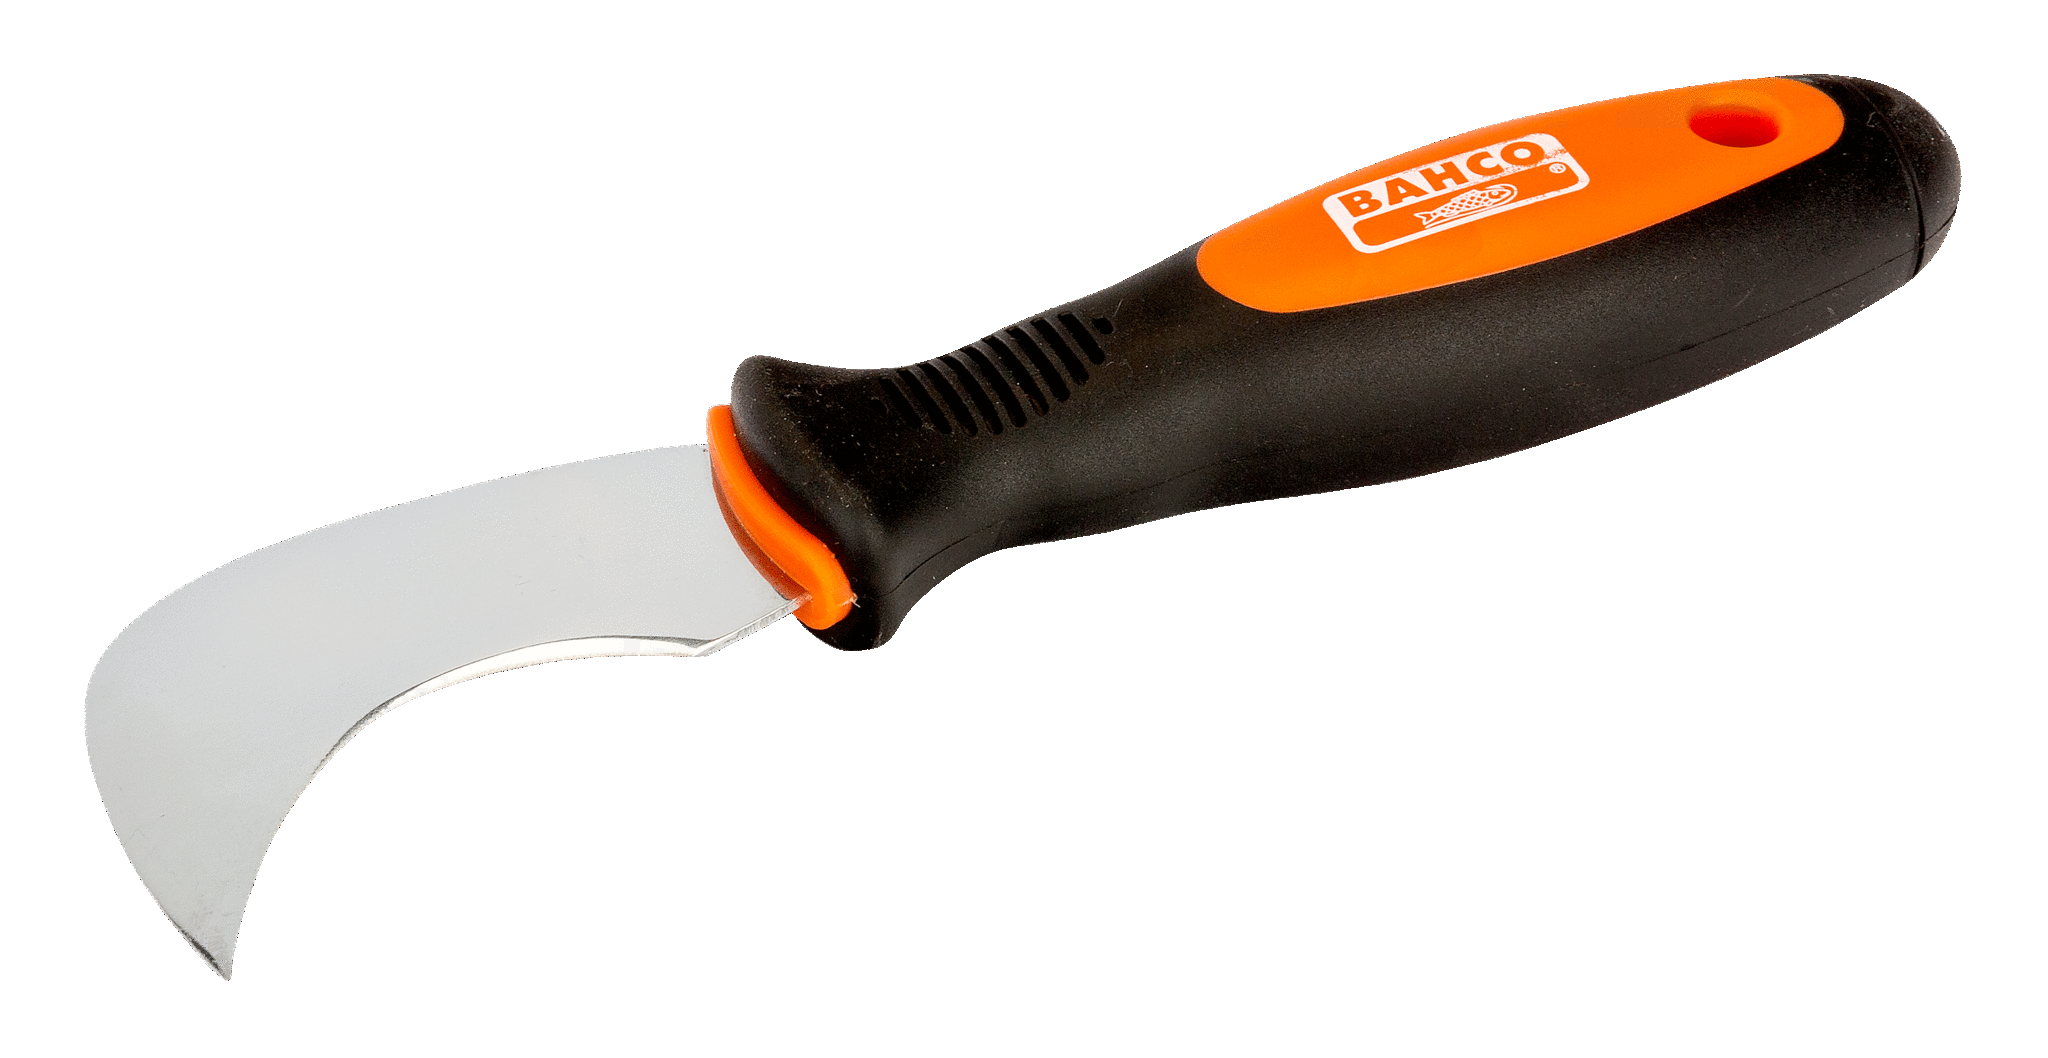 Hook Blade Knife